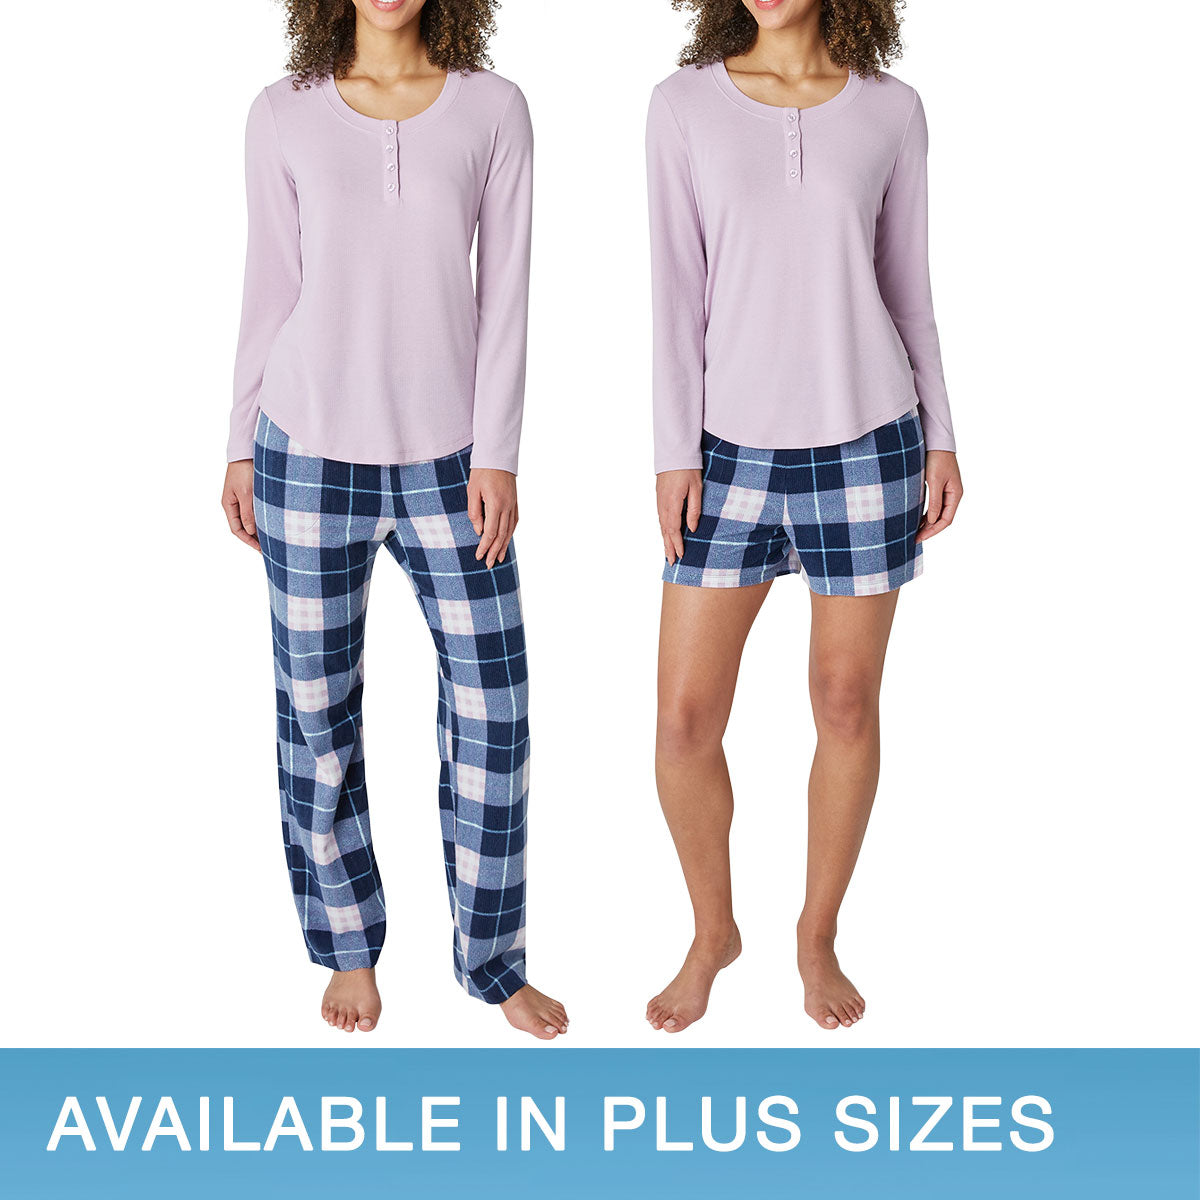 Lucky Brand Womens Pajama Set Blue Tie Dye 4-Piece PJ's Soft Stretch Size  Medium